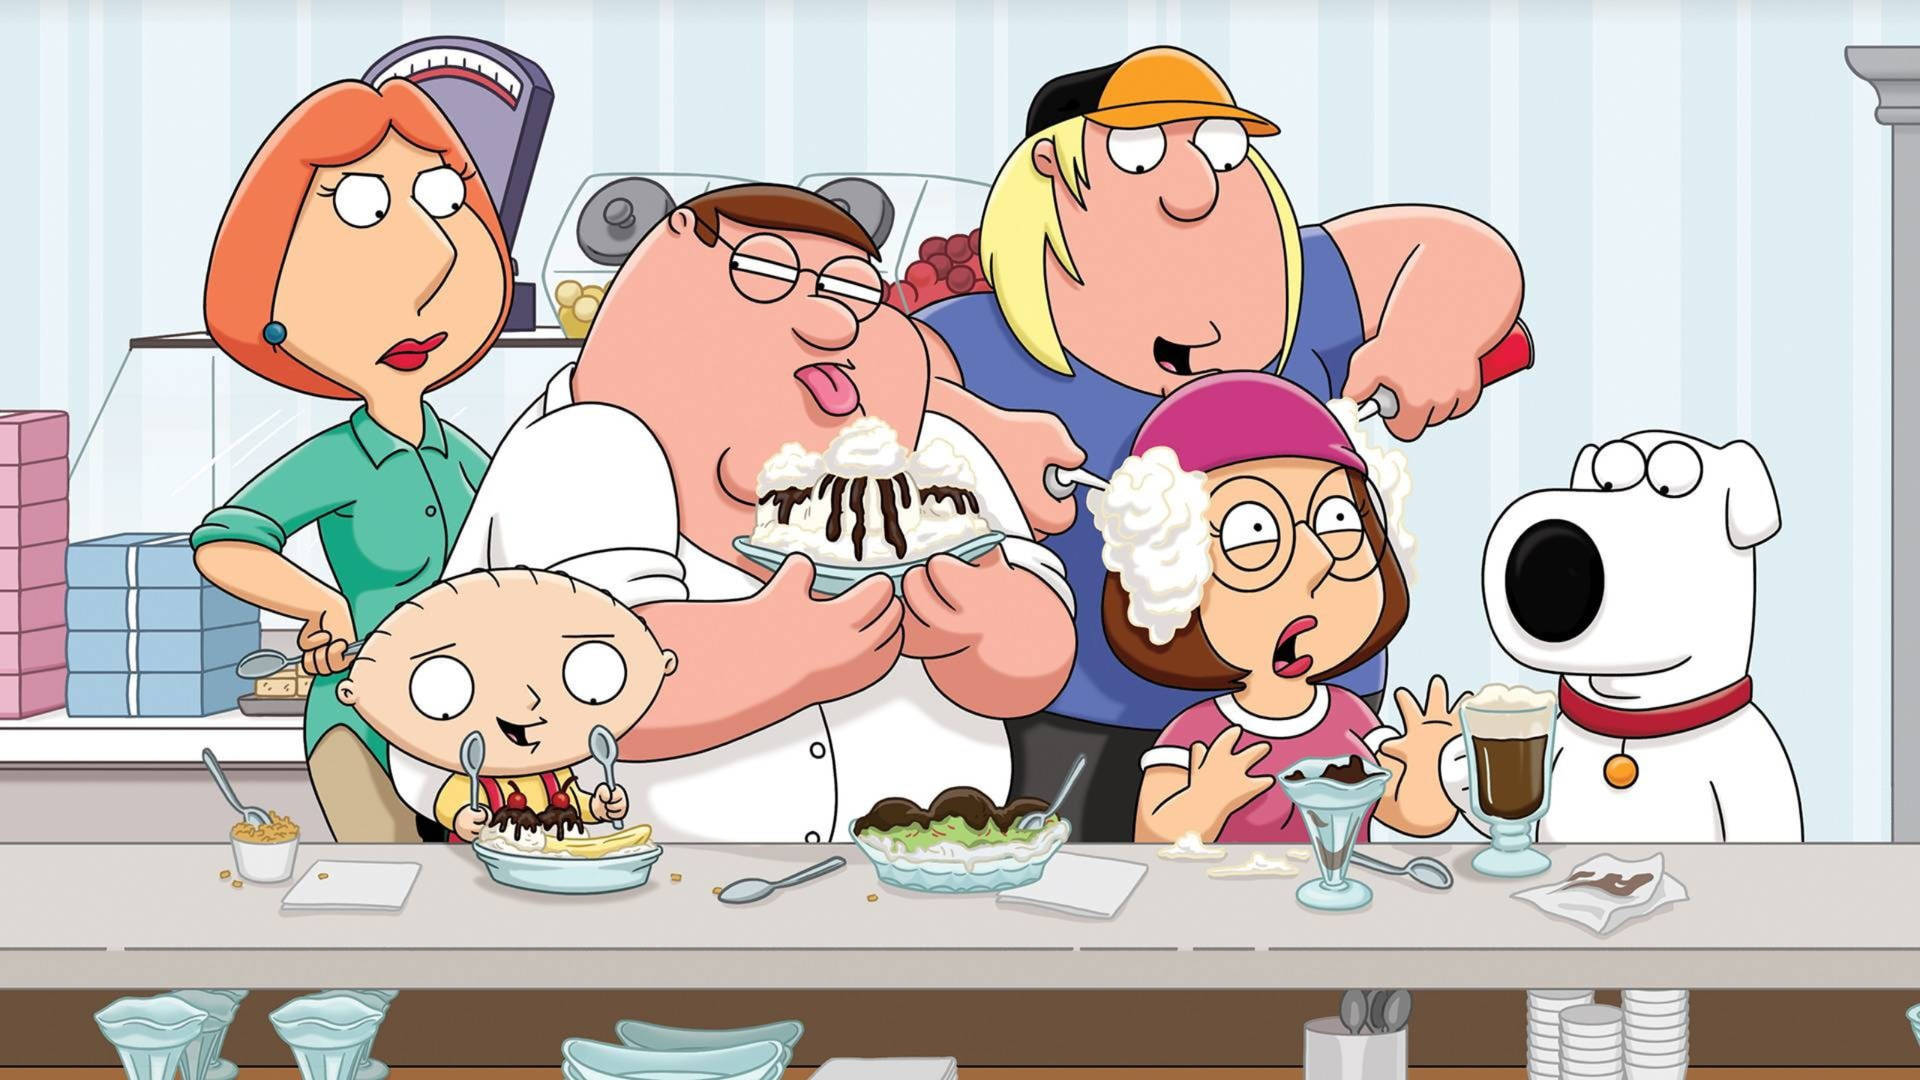 Family Guy Peter's Family Eats Desserts